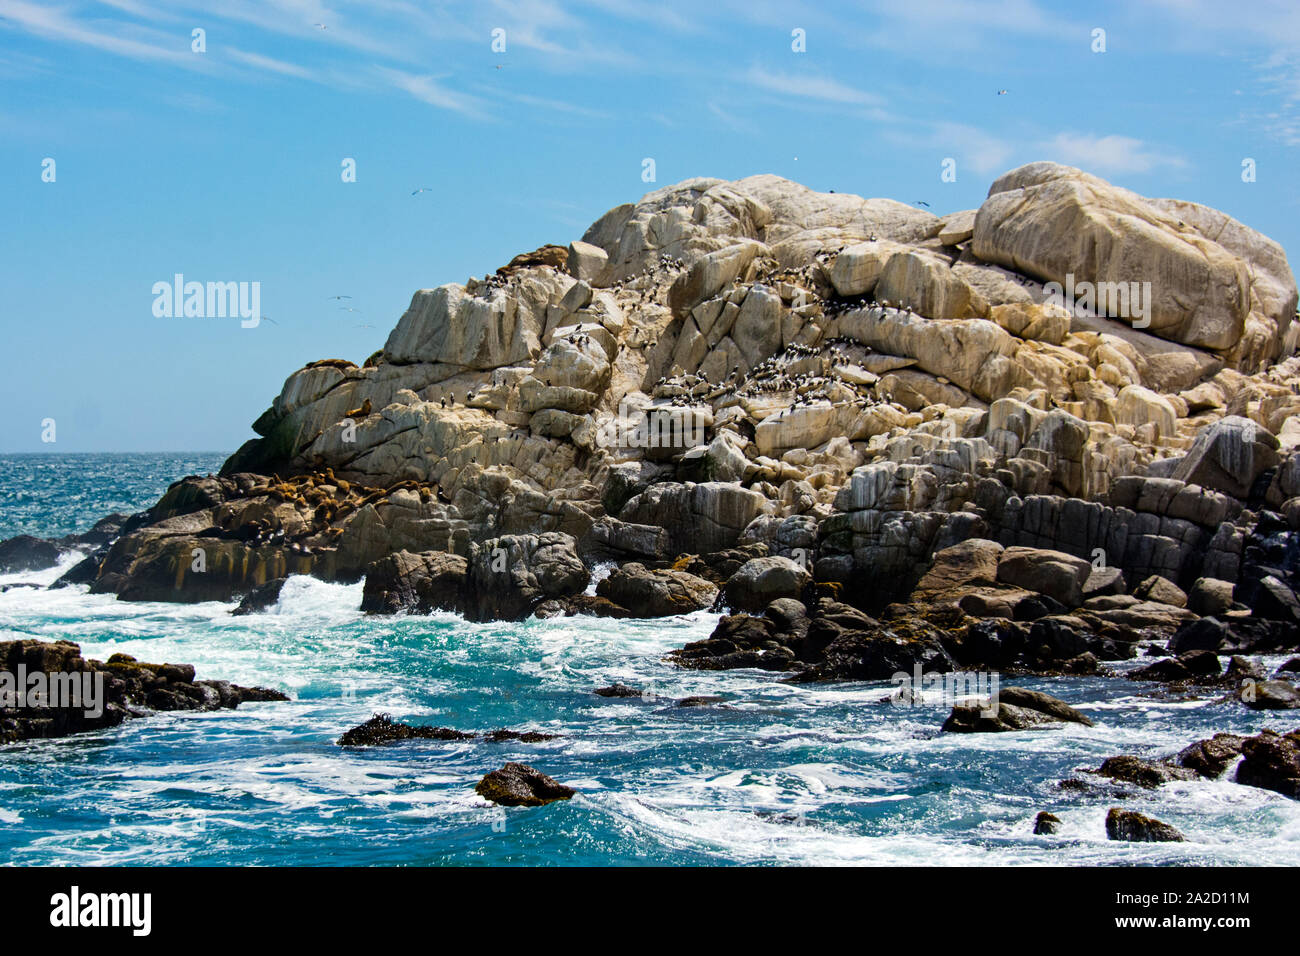 Colonie de lions de mer d'Amérique du Sud (Otaria flavescens) reposant sur des rochers côtiers, Patagonie, Chili, Amérique du Sud Banque D'Images